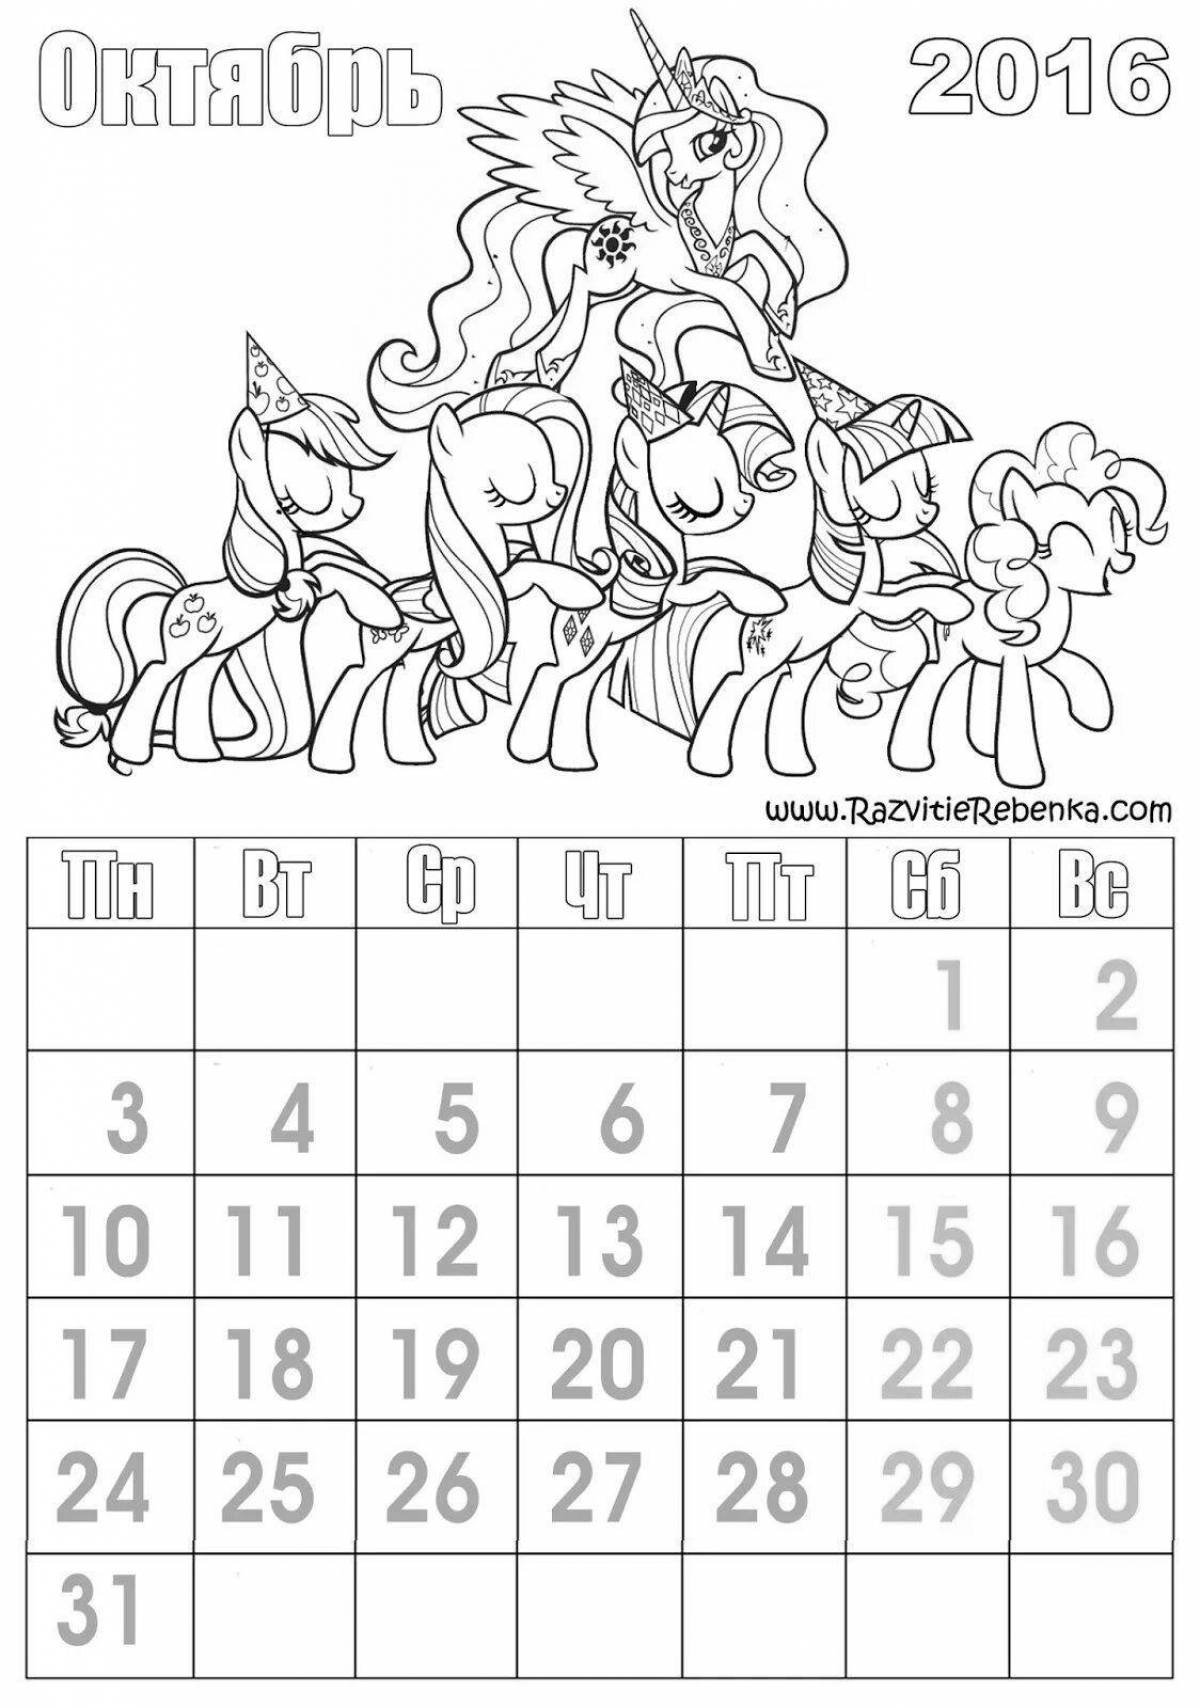 Children's calendar #3